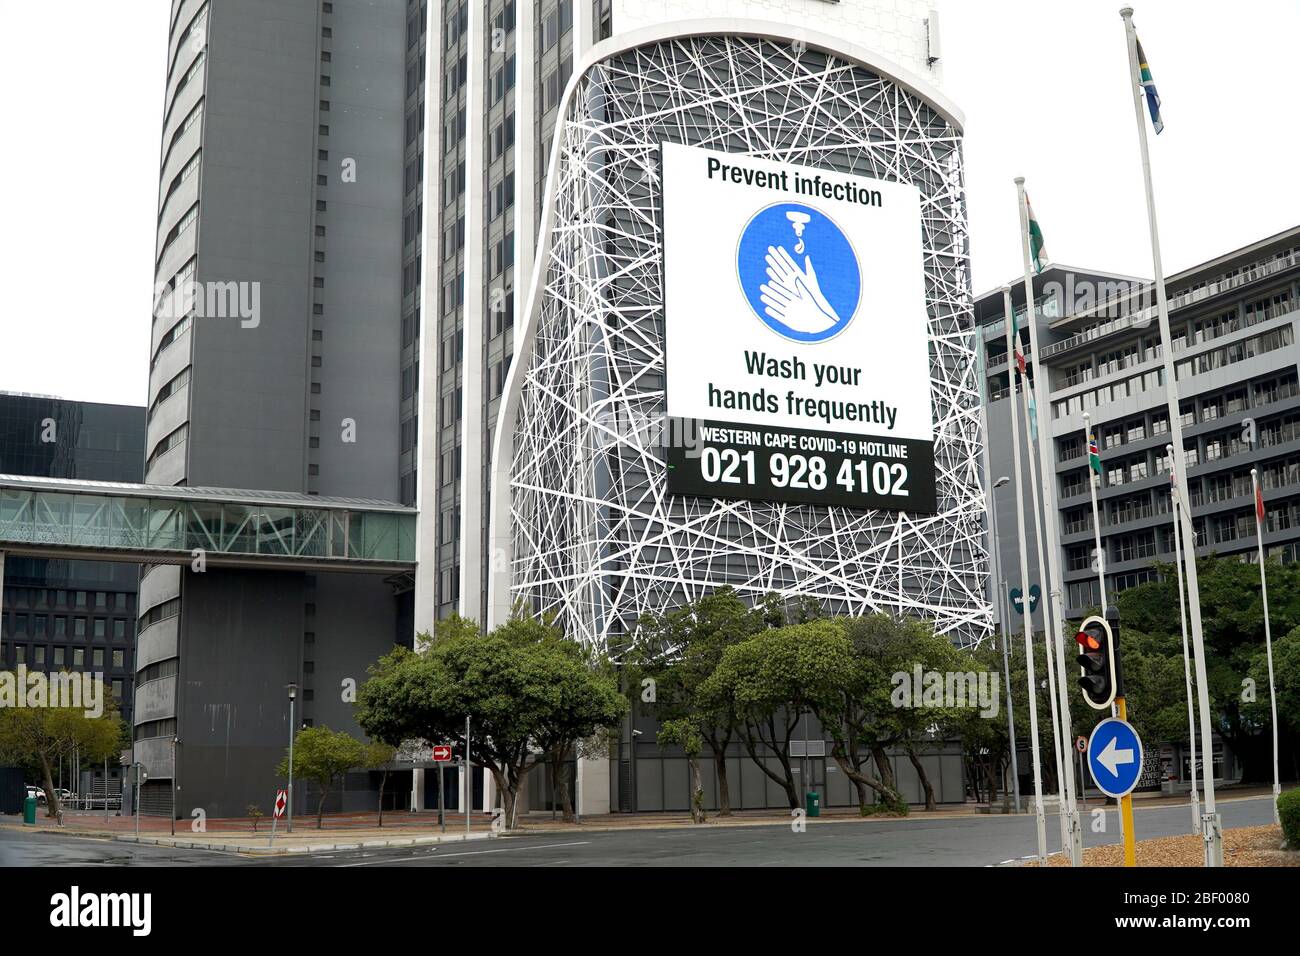 Kapstadt, Südafrika - 16. April 2020 : Händewasch-Schild auf einem Gebäude in einem Bürogebäude in Kapstadt, Südafrika Stockfoto